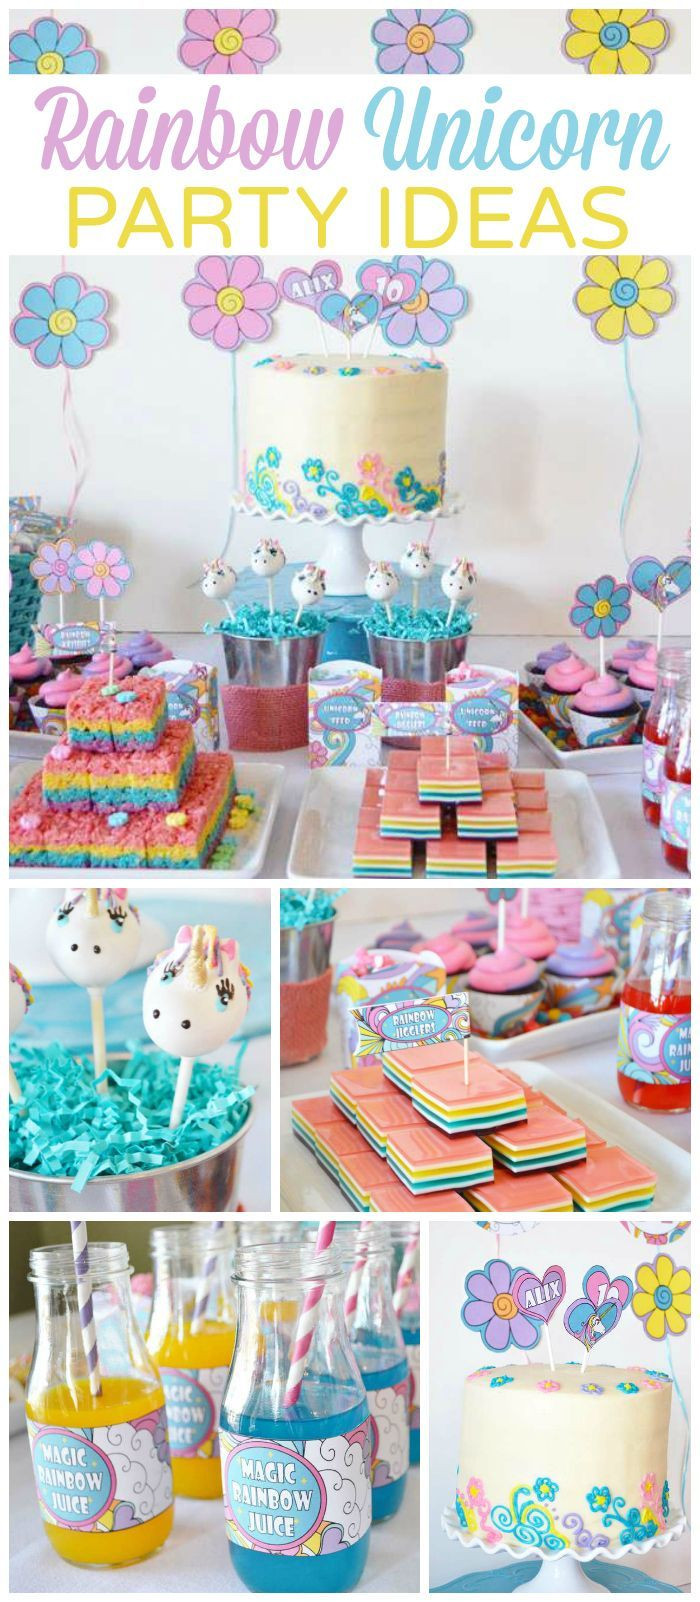 Unicorn And Rainbow Birthday Party Ideas
 25 best ideas about Rainbow unicorn on Pinterest